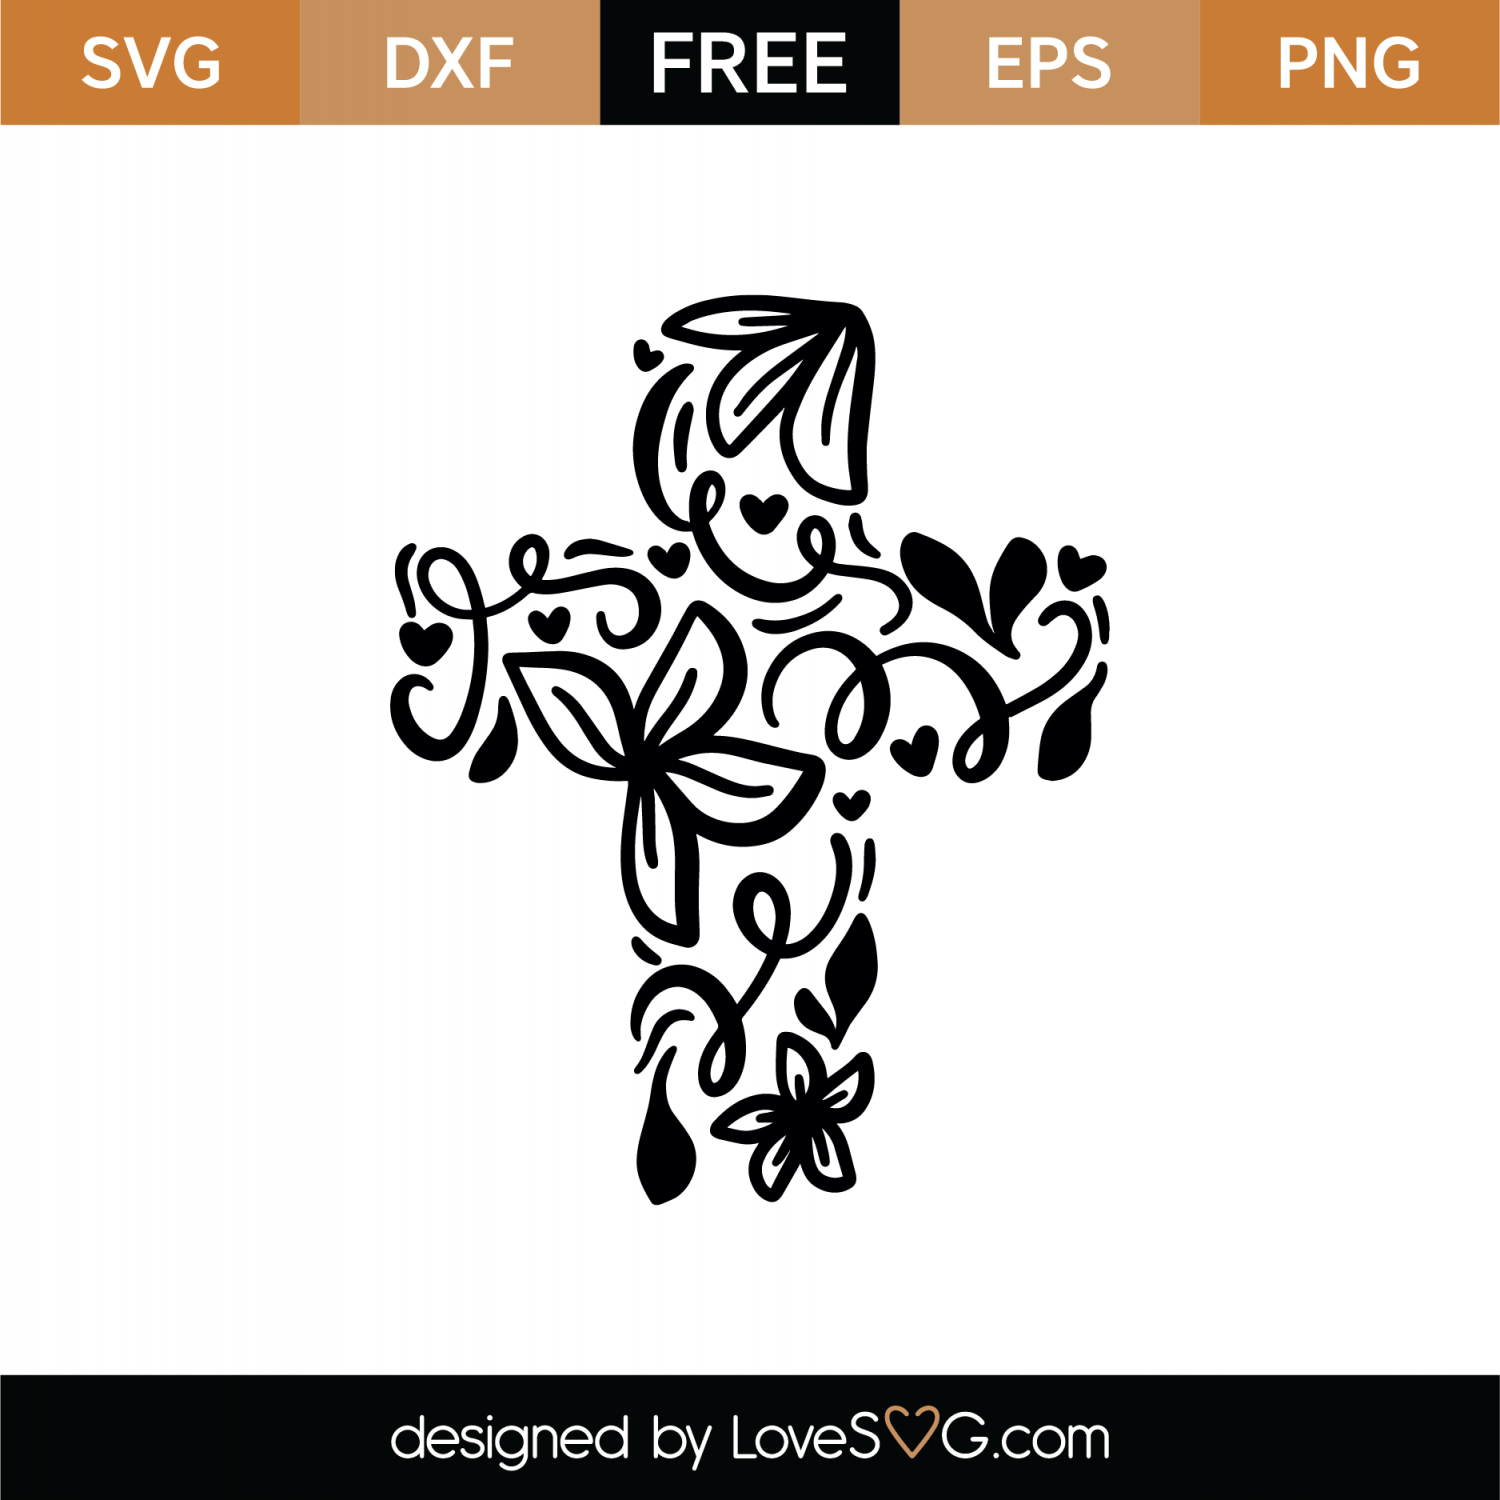 Download Mandala Cross Svg Free - Layered SVG Cut File